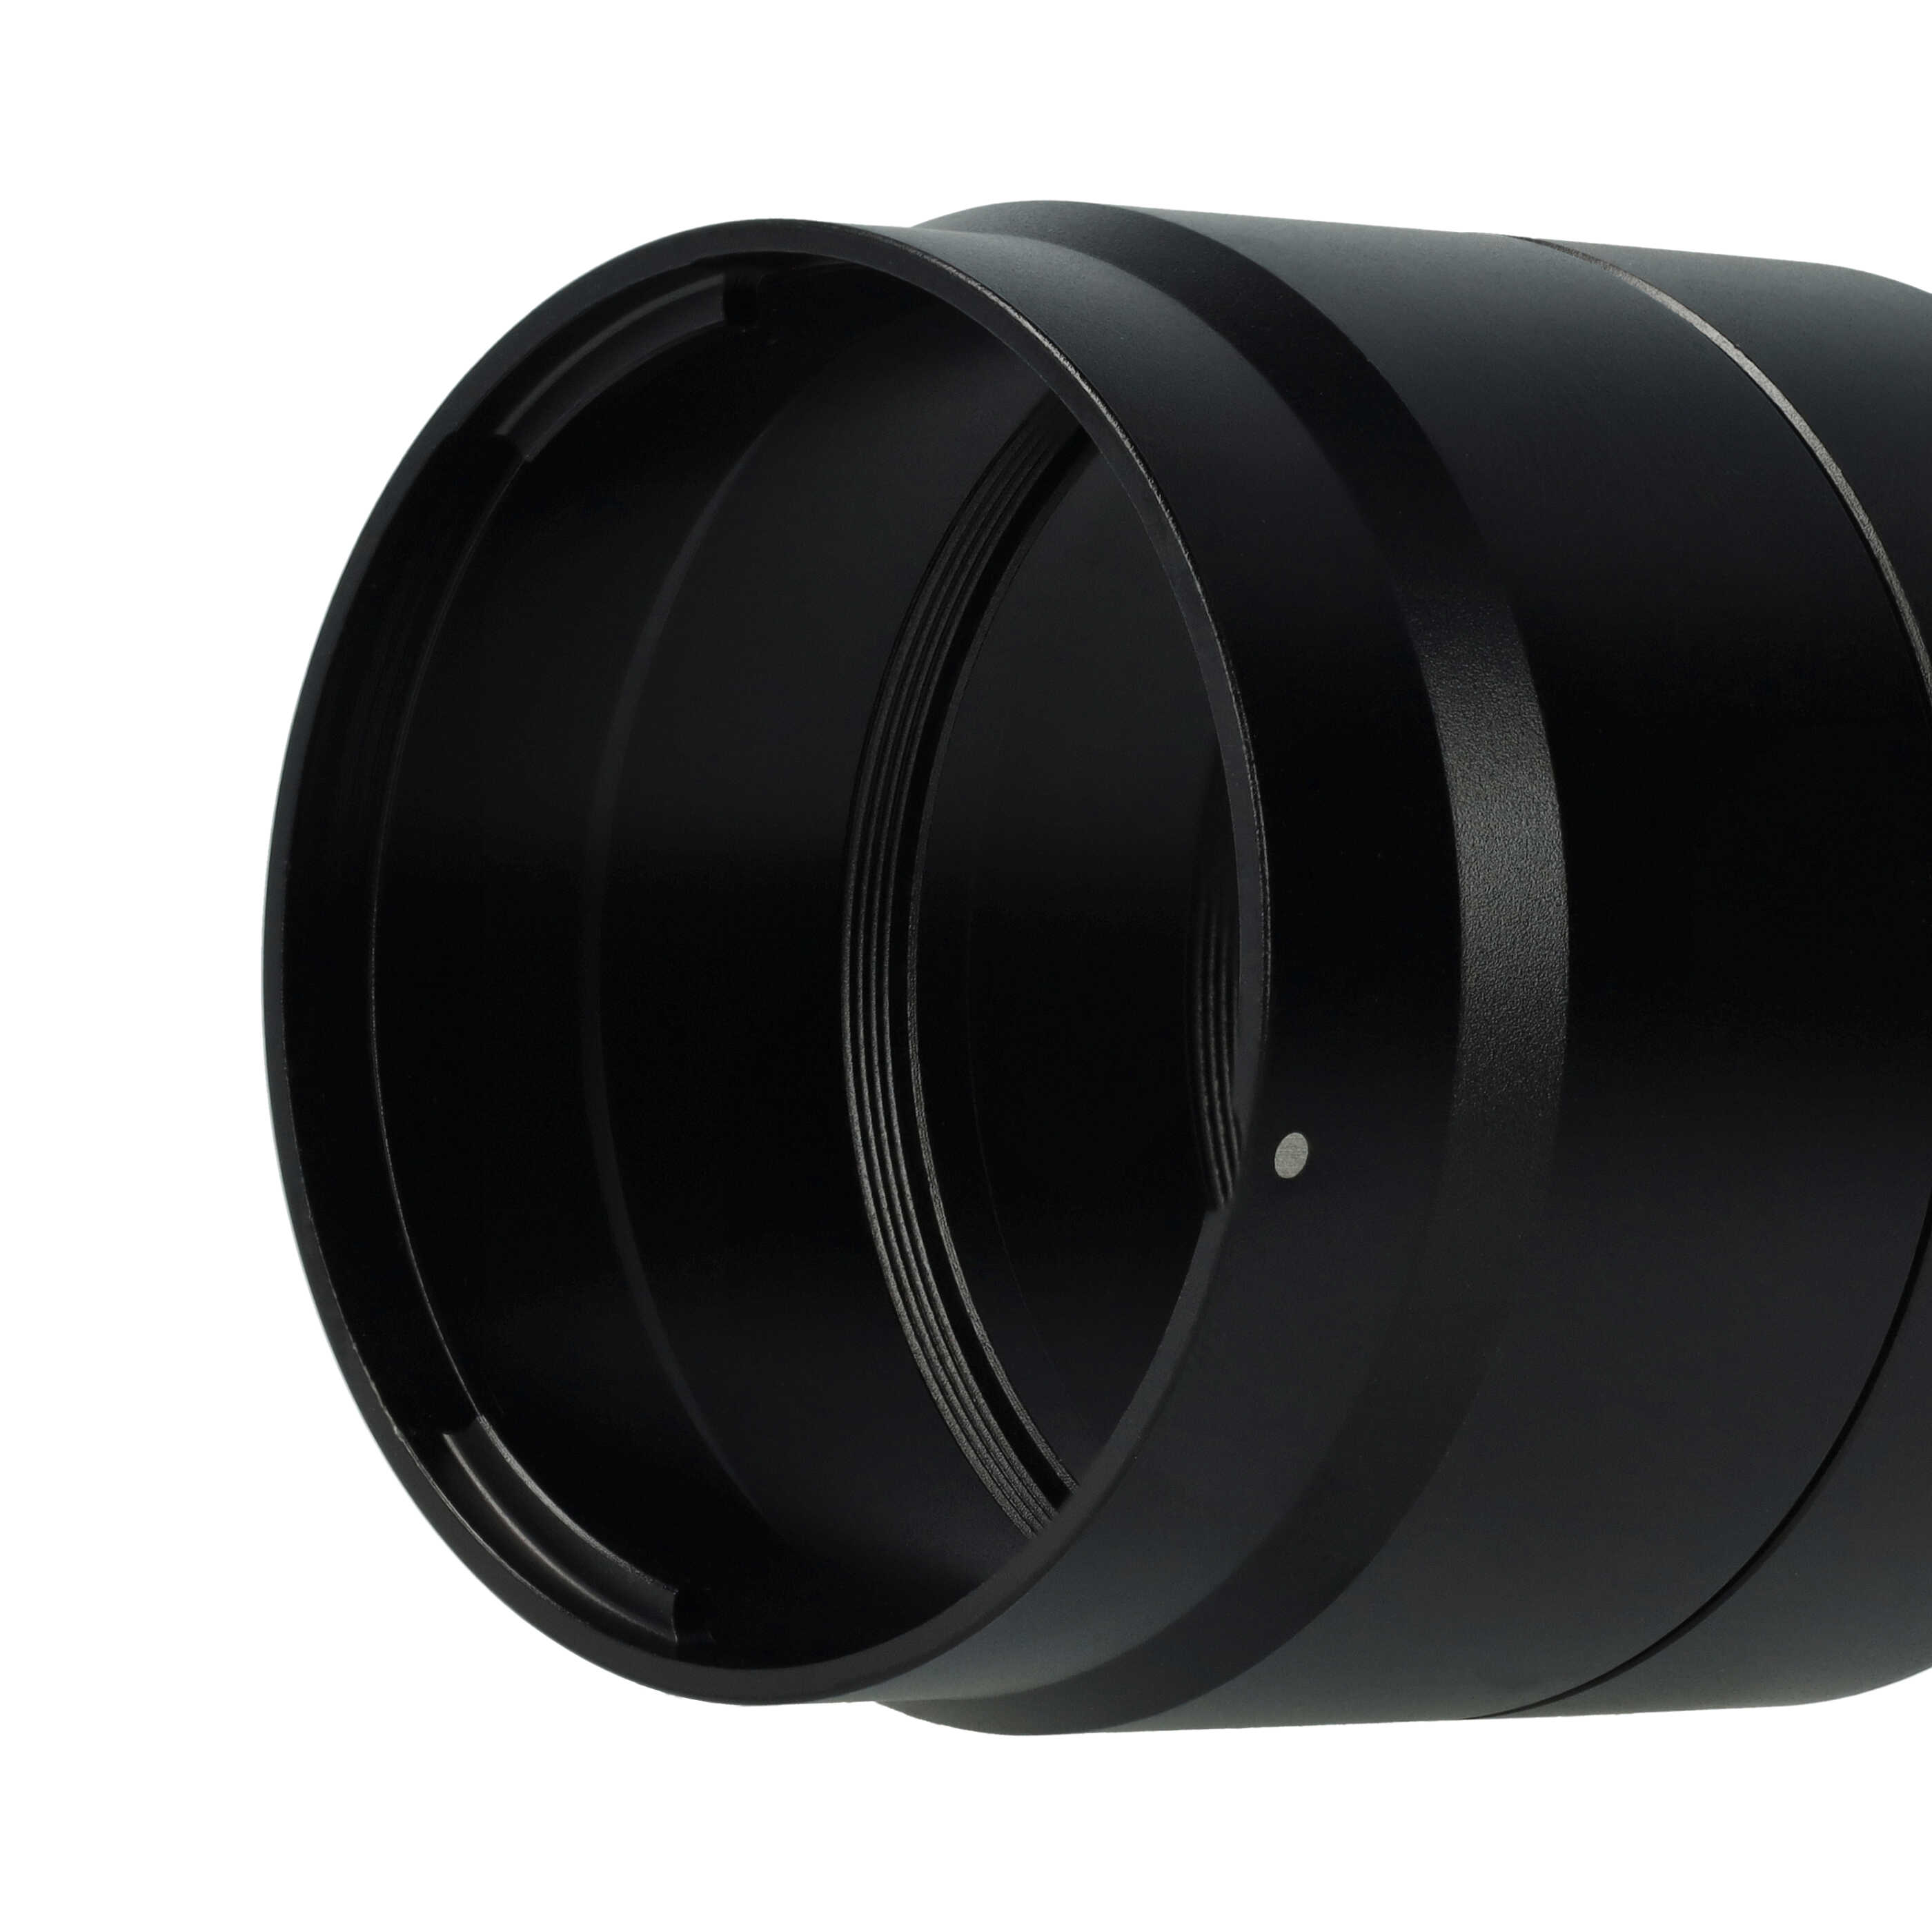 Adaptateur pour filtre 58 mm tubulaire pour objectif photo Canon PowerShot G10, G11, G12